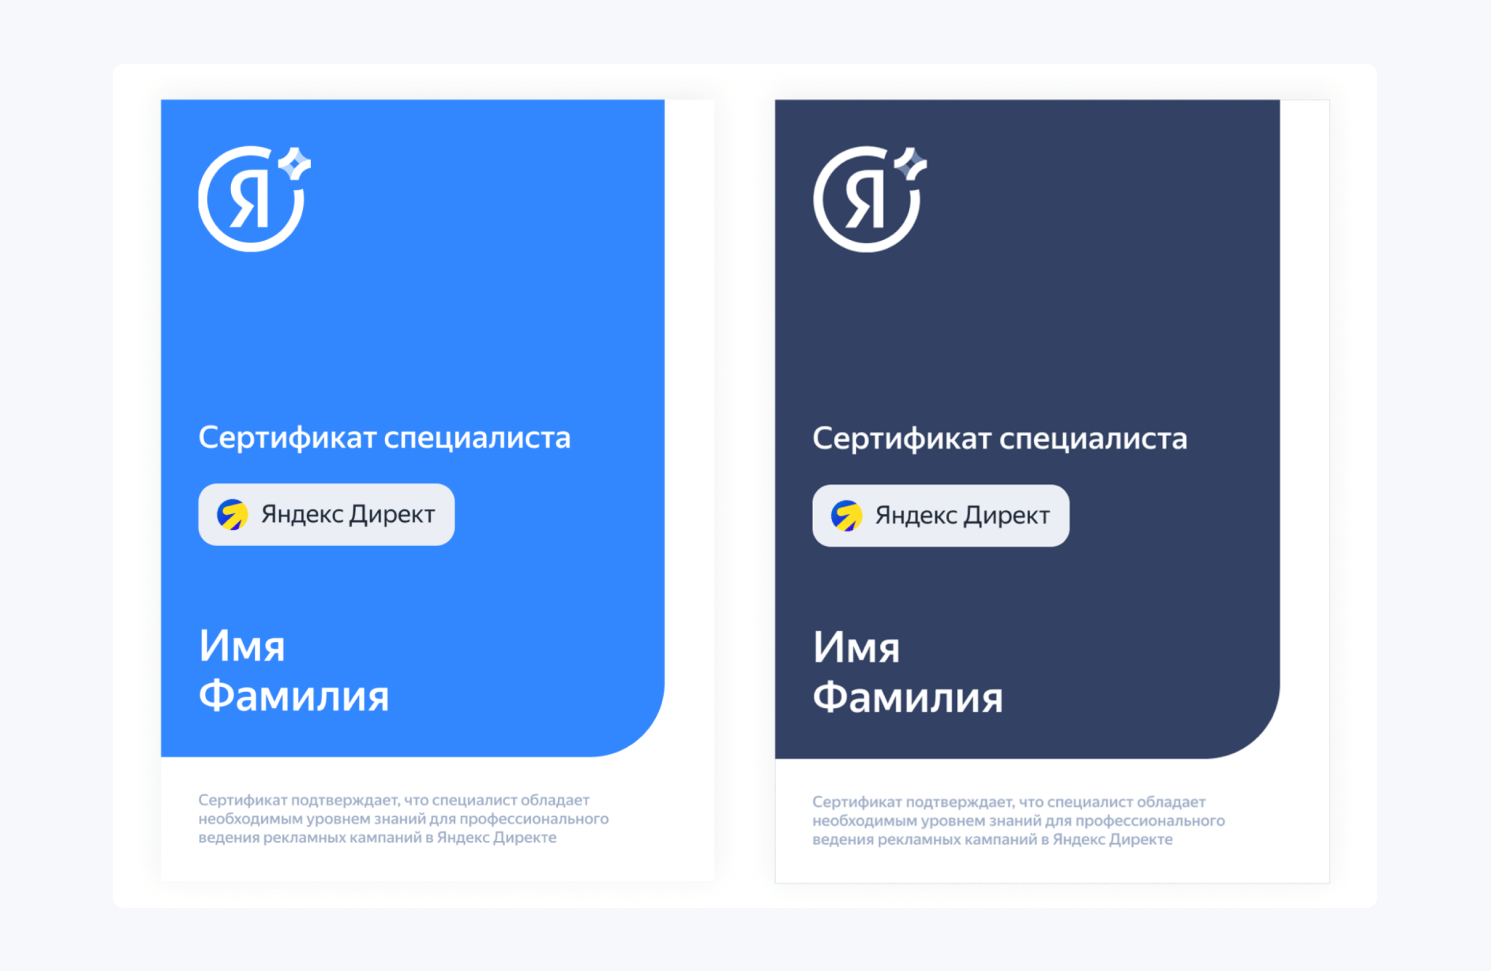 сертификат специалиста по Яндекс Директу